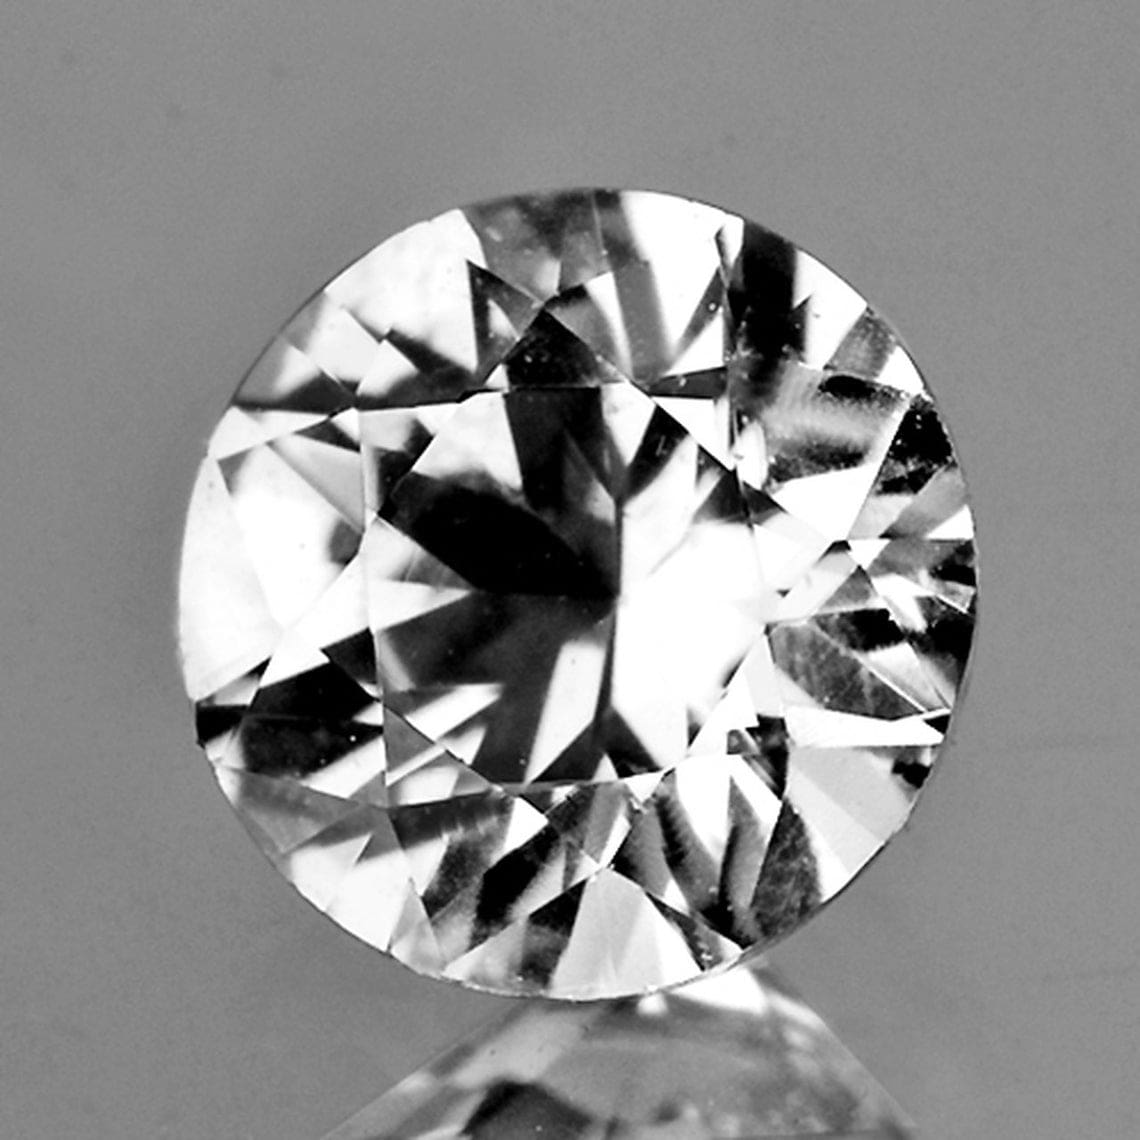 Pedra de zircão tipo diamante